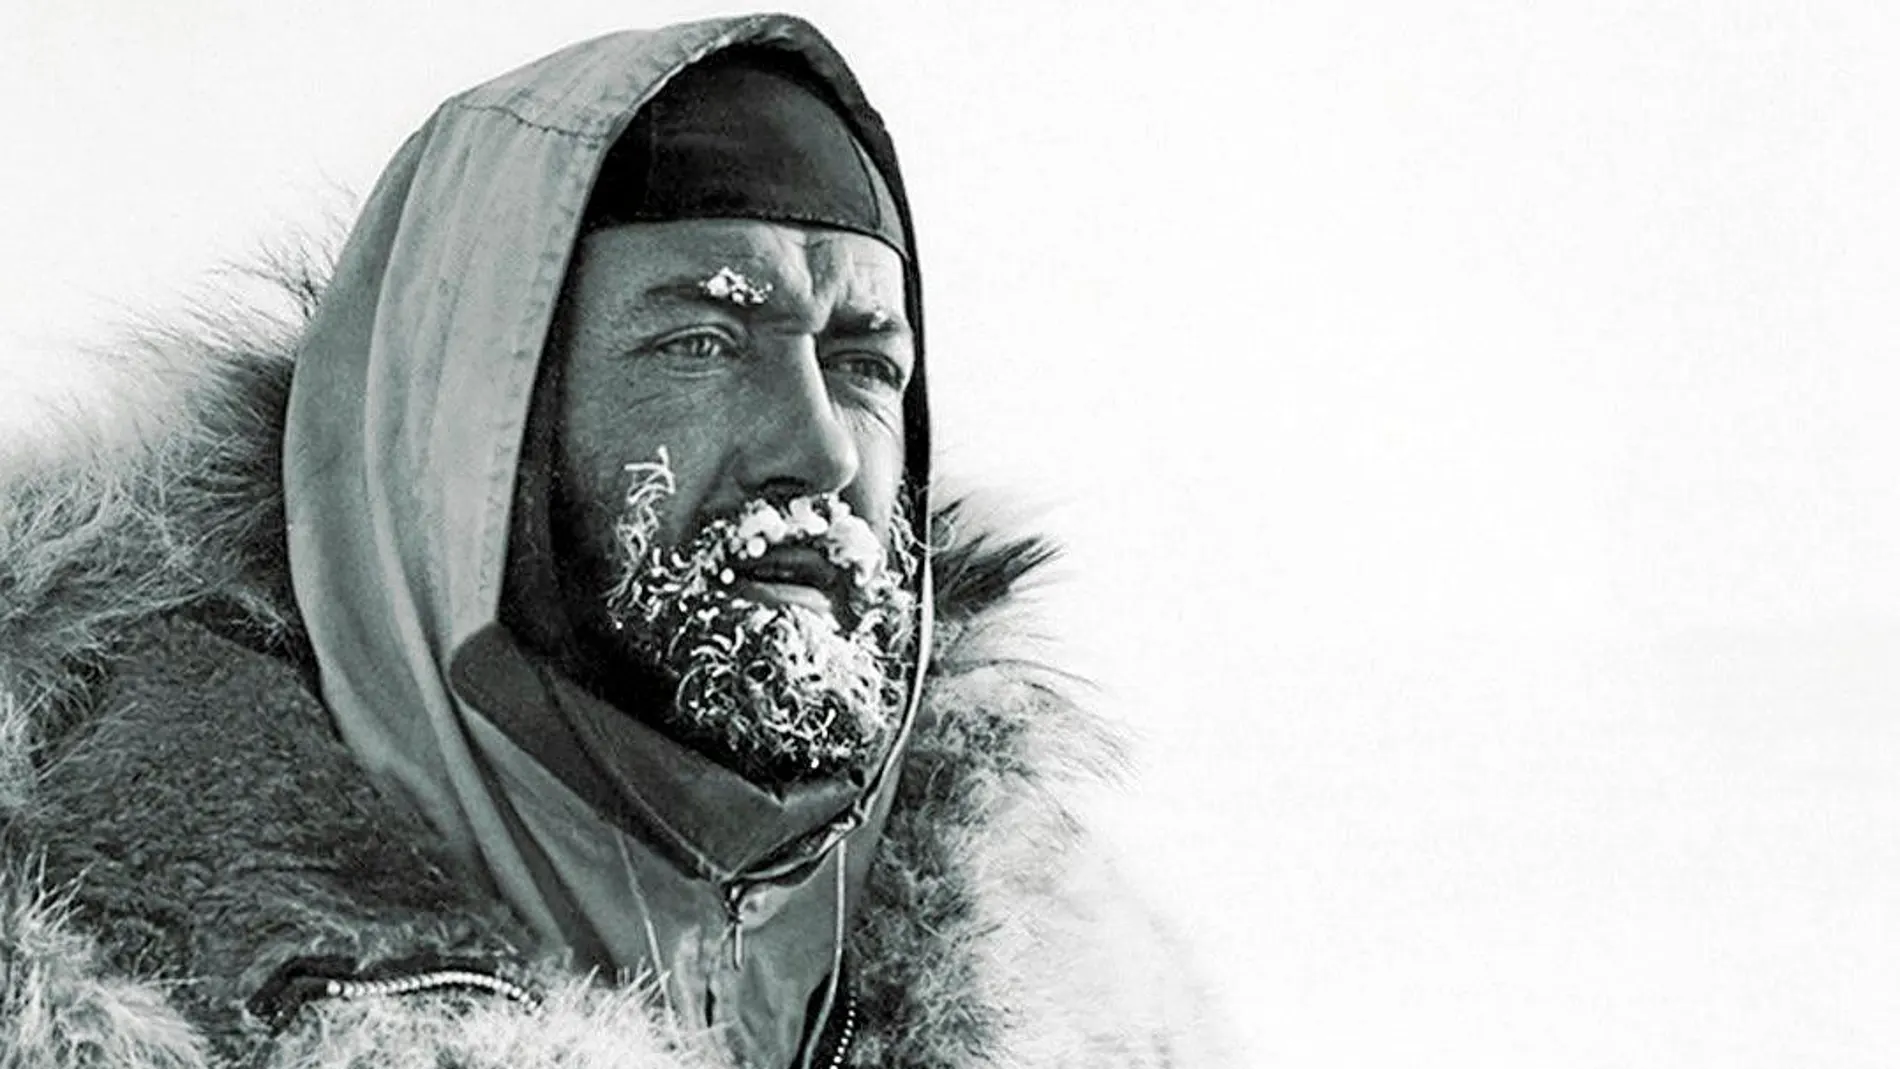 Herbert lideró la primera expedición que logró cruzar el Océano Ártico vía el Polo Norte